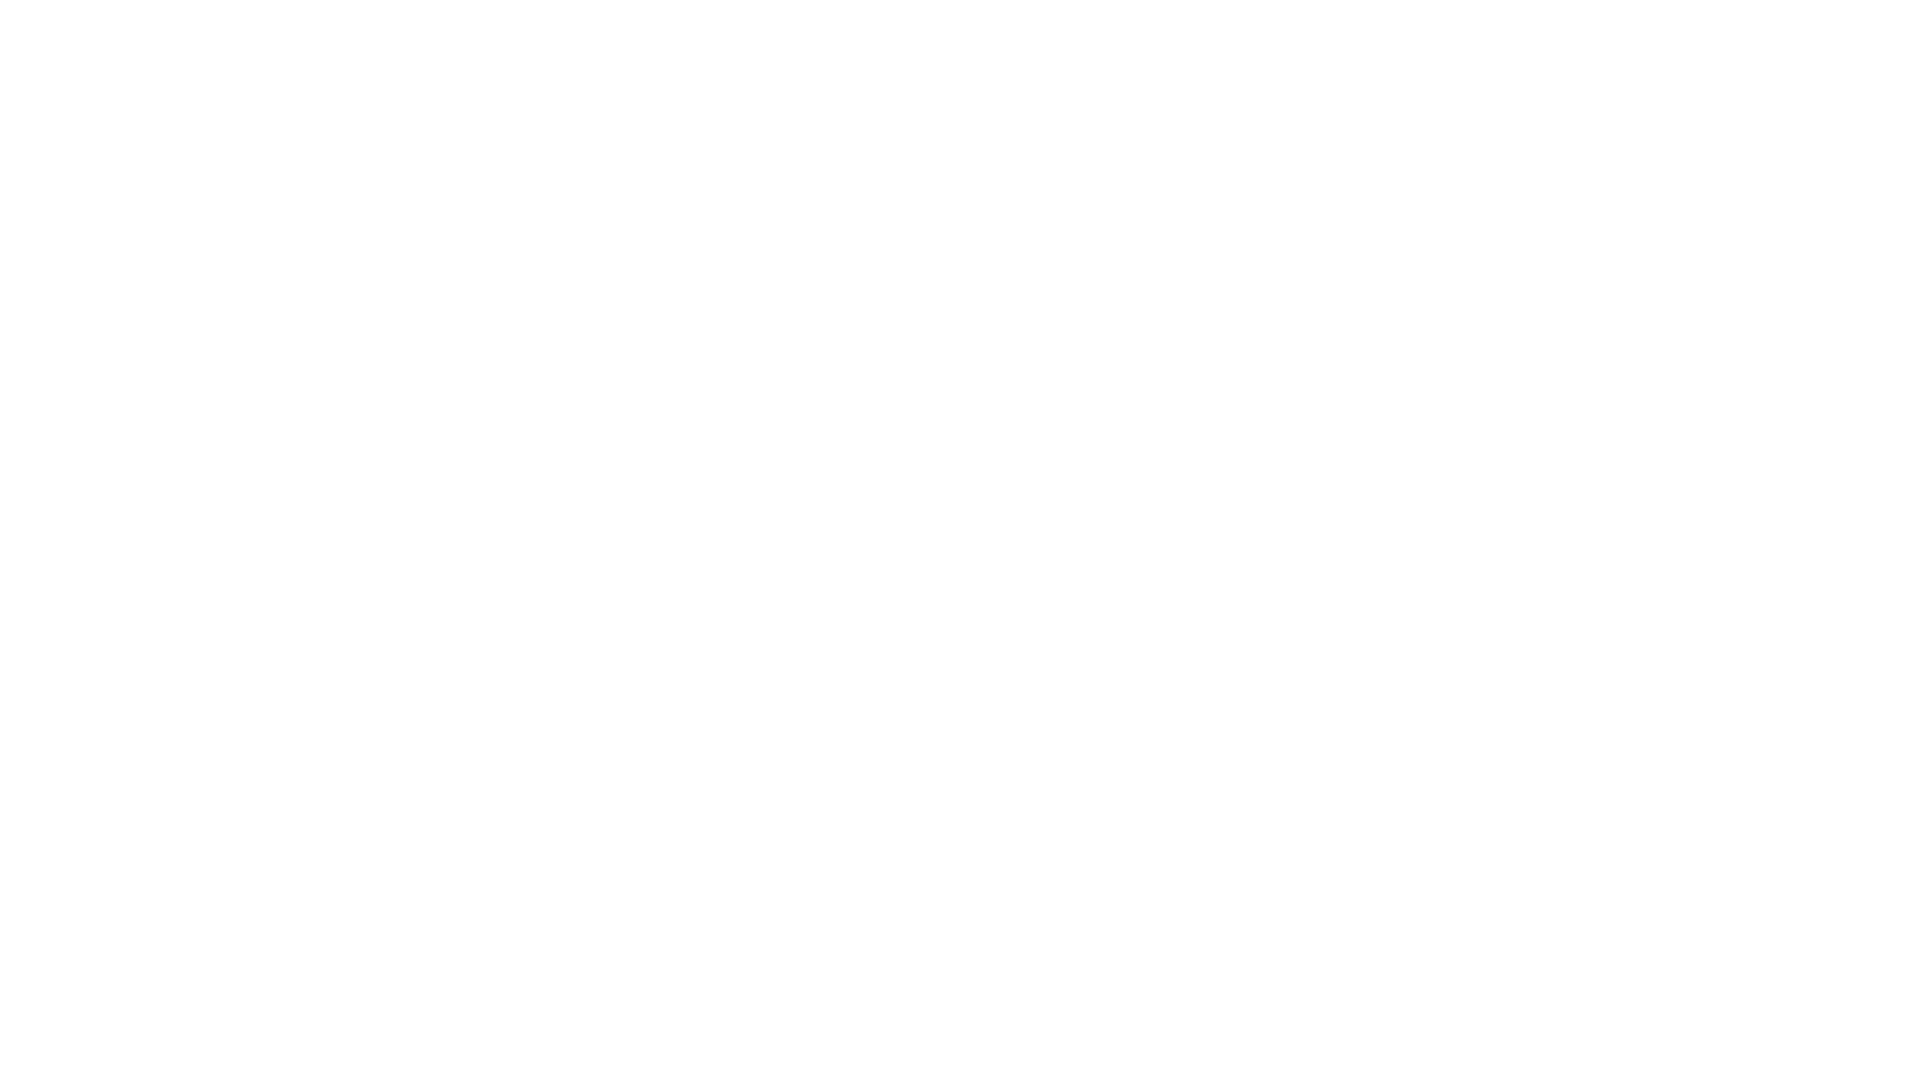 Hazy